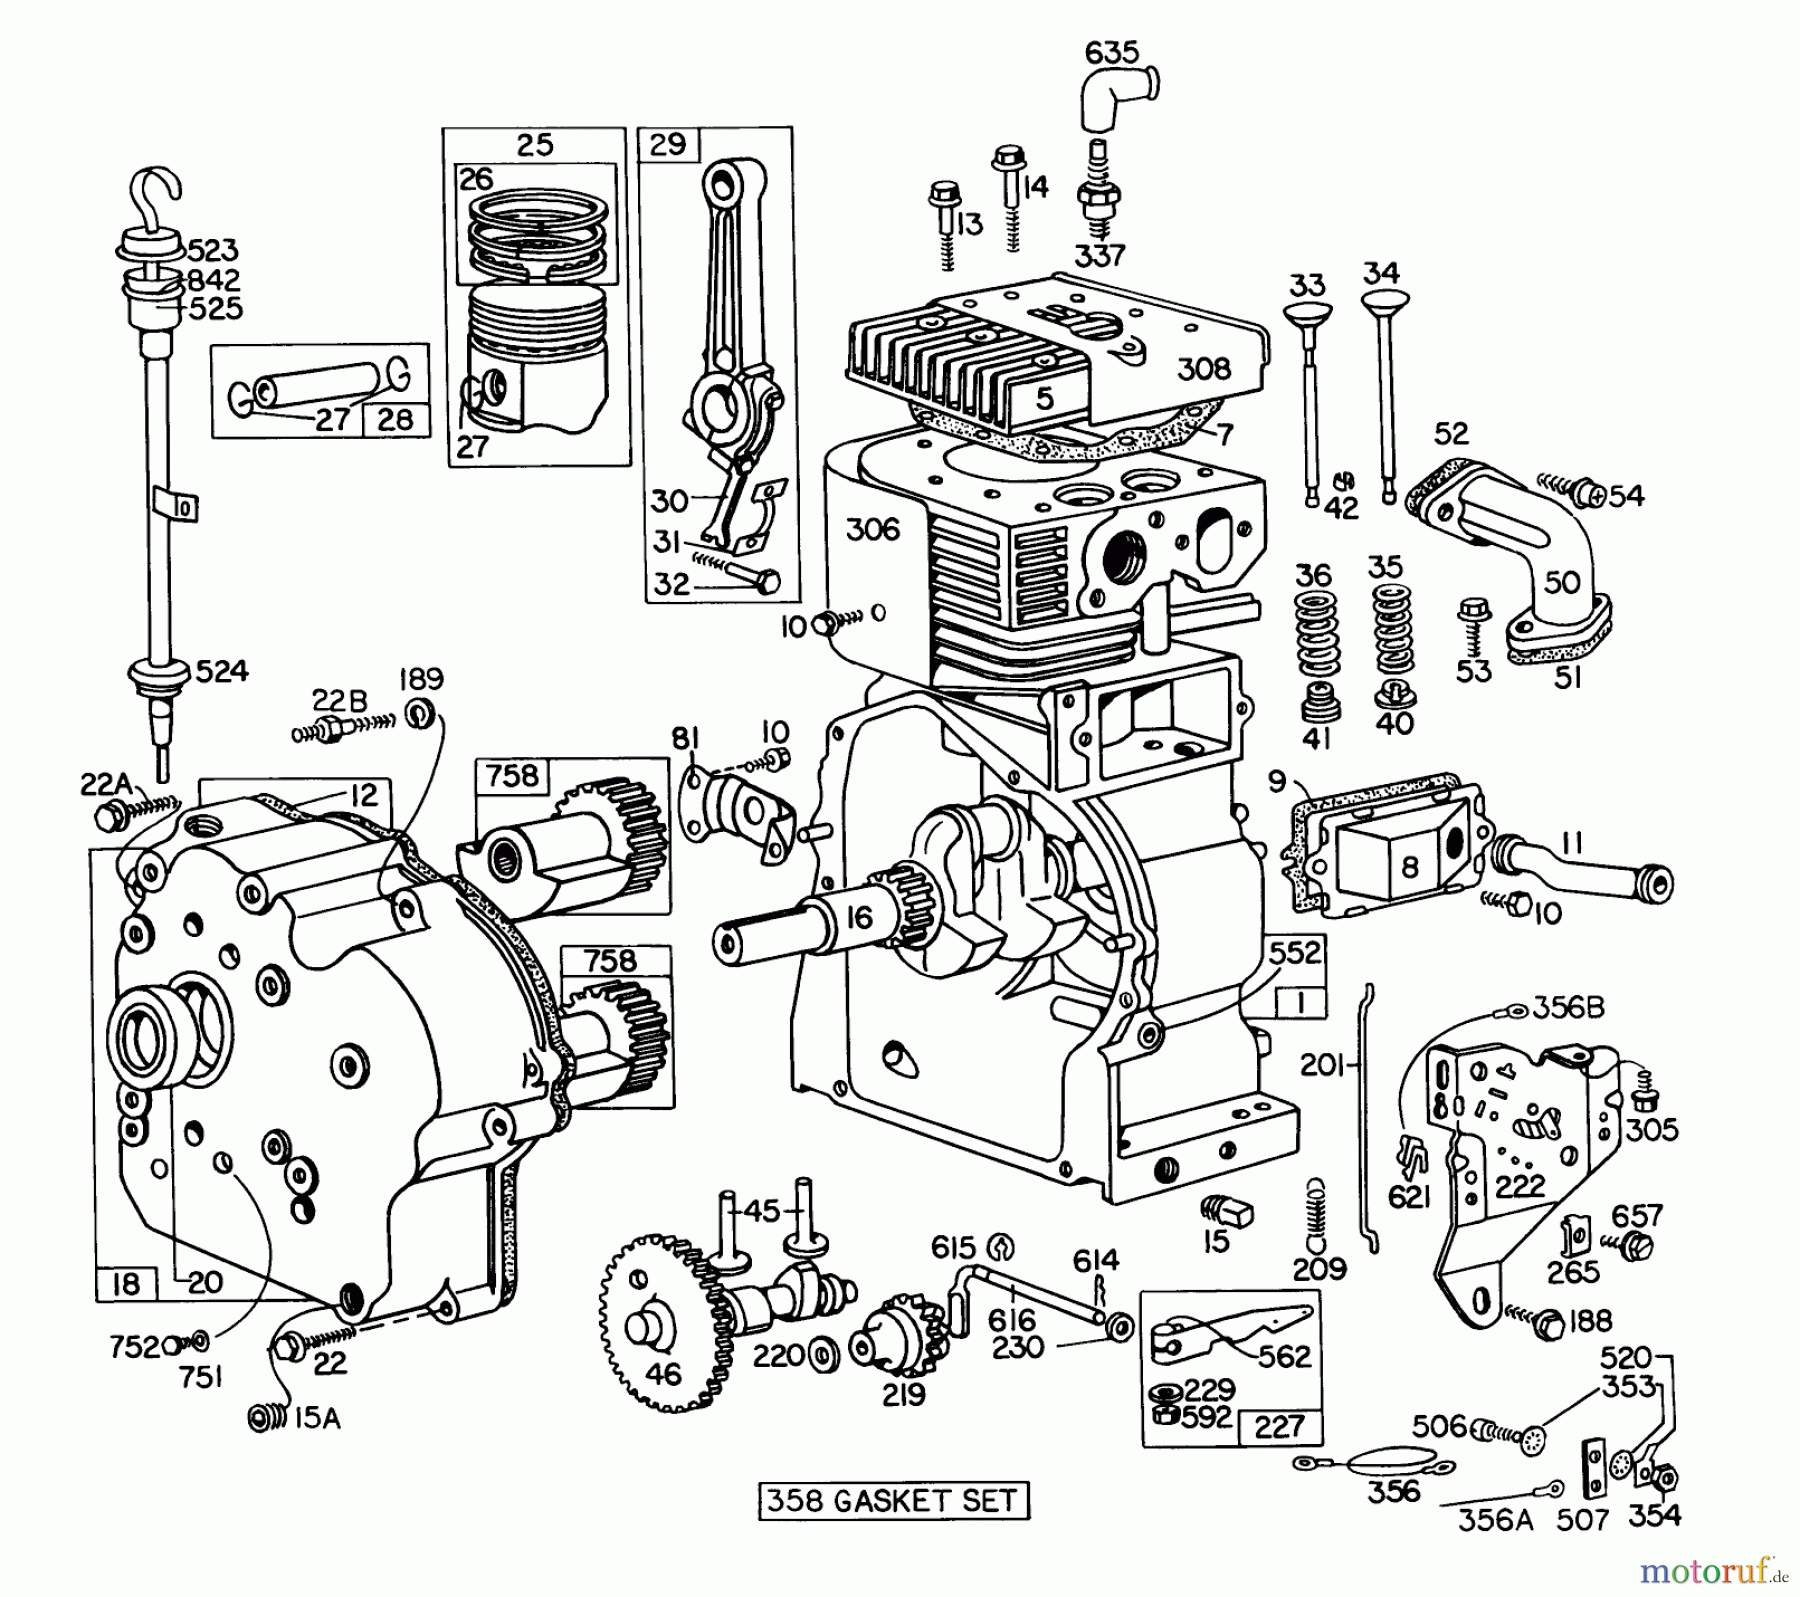  Toro Neu Snow Blowers/Snow Throwers Seite 1 31995 (1032) - Toro 1032 Snowthrower, 1975 (5000001-5999999) ENGINE BRIGGS & STRATTON MODEL NO. 251417 TYPE NO. 0140-01 #1